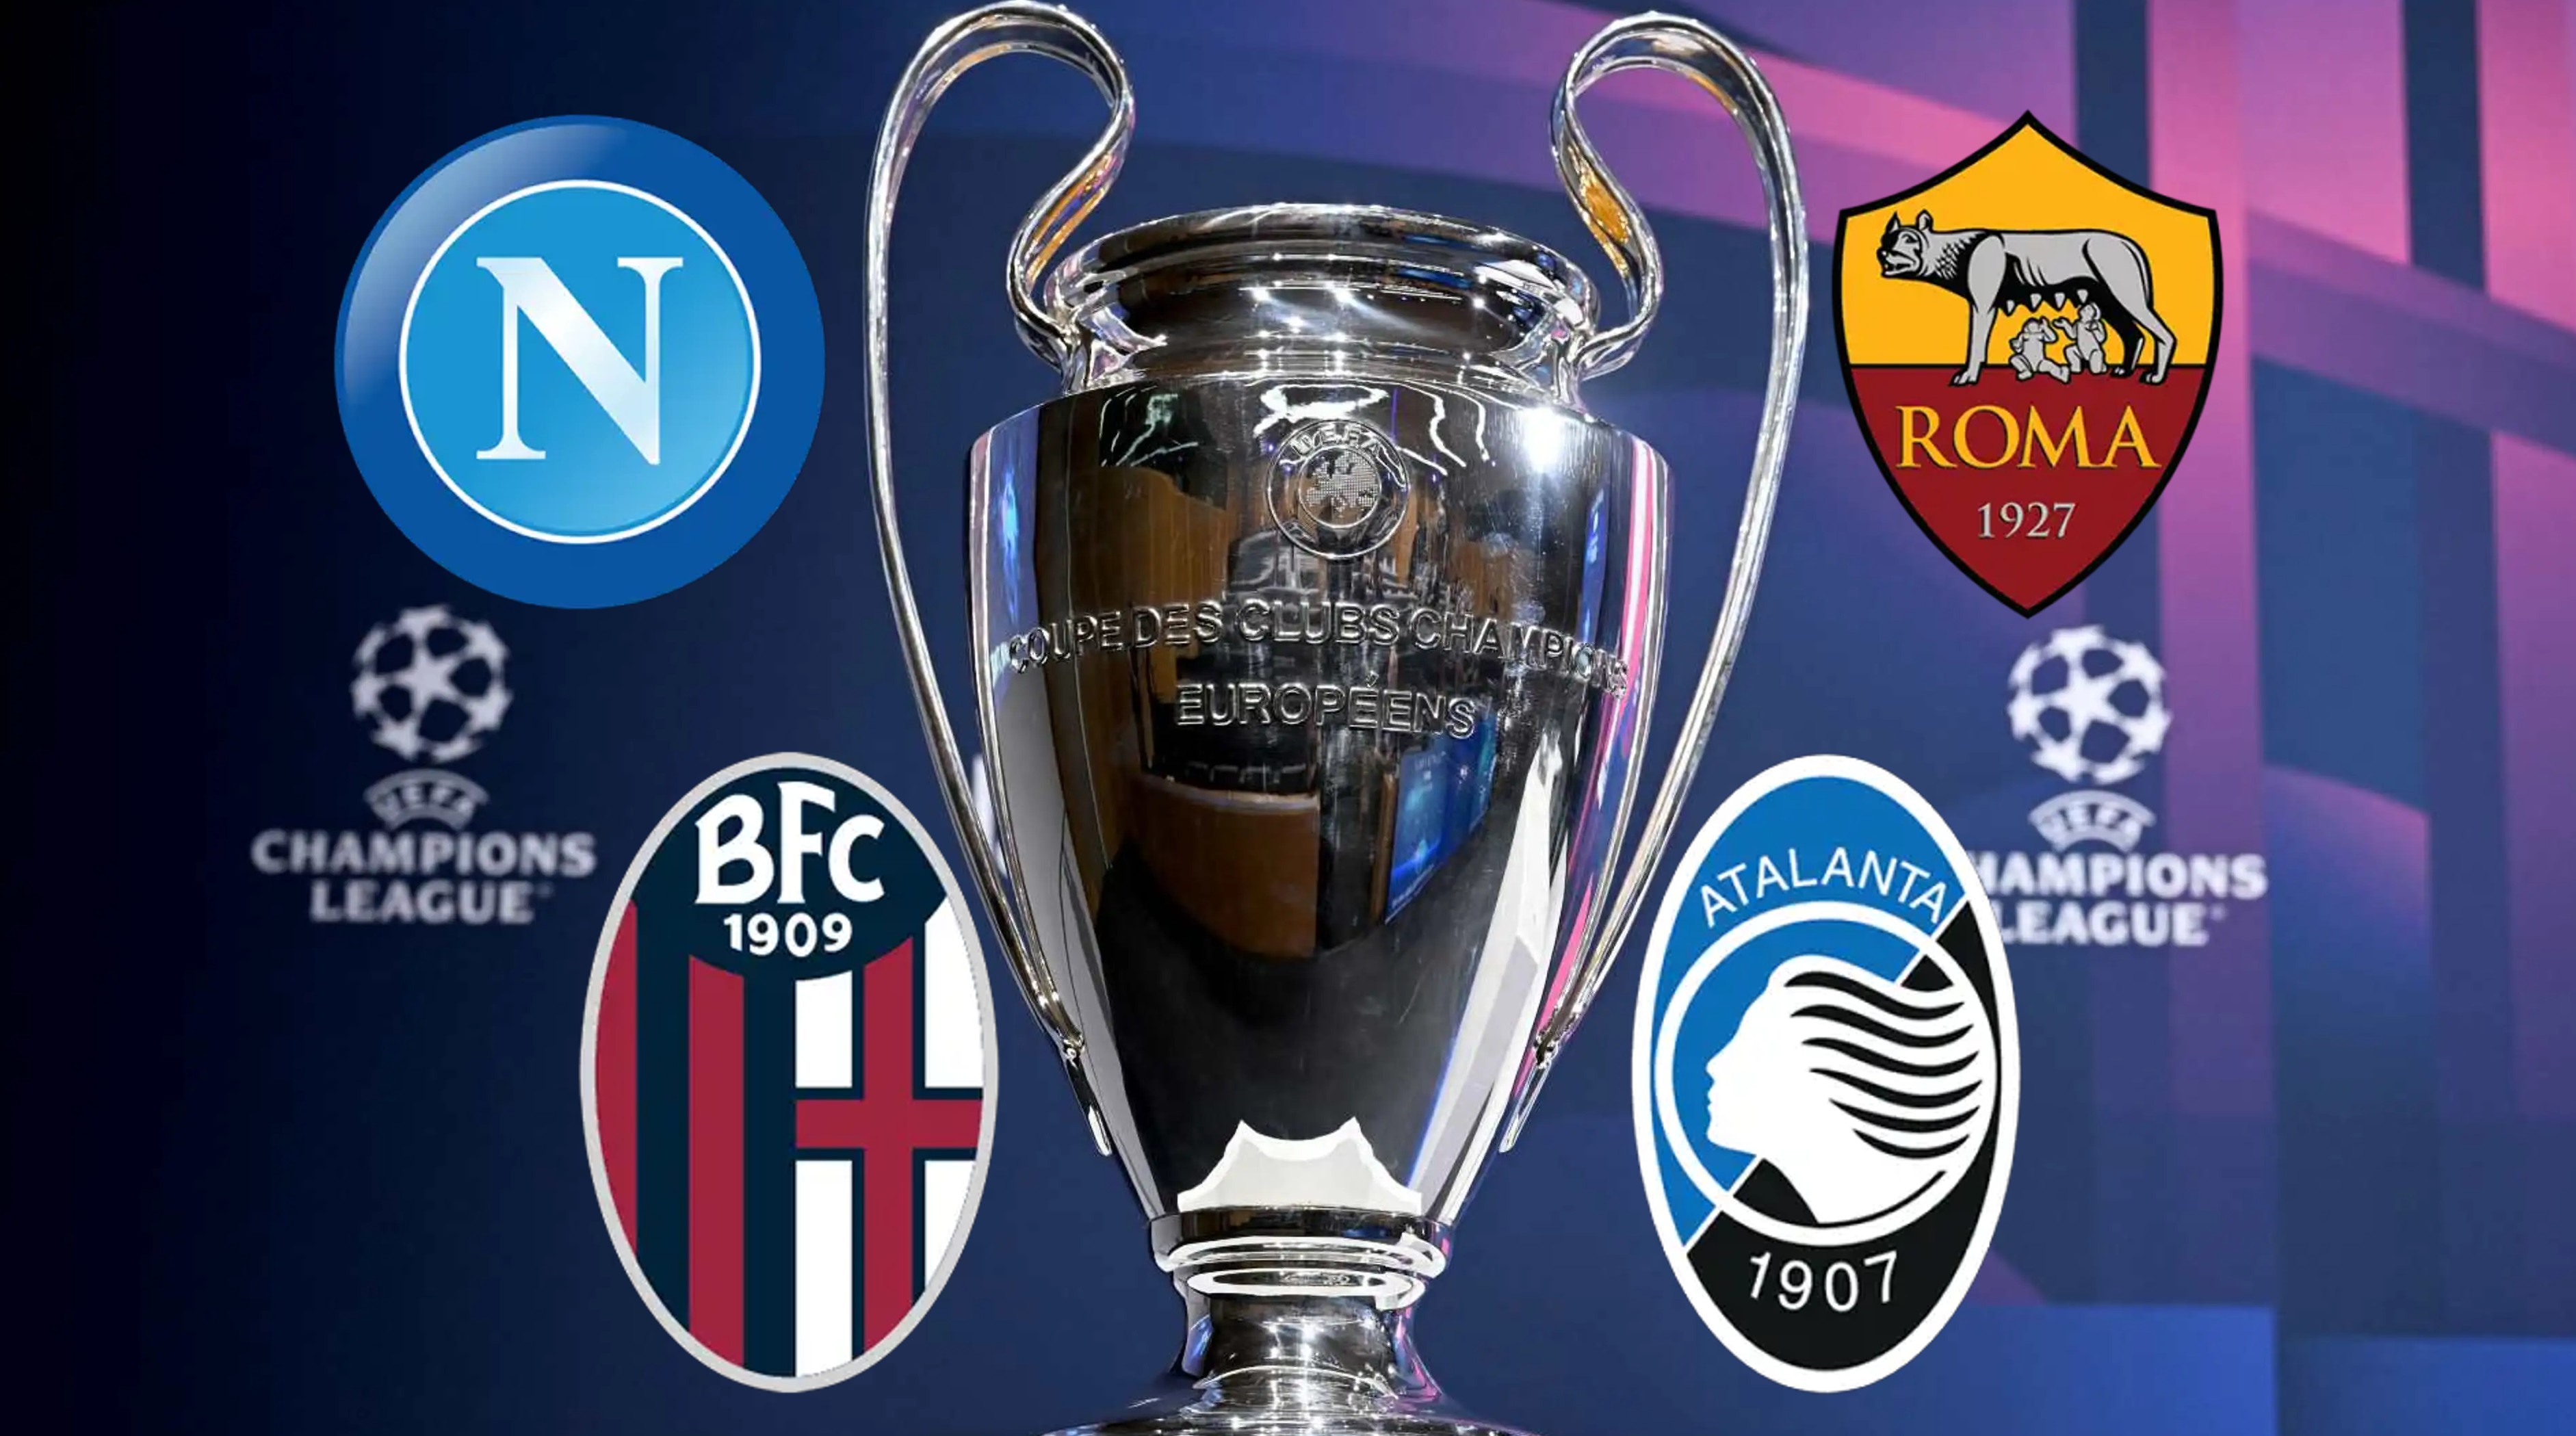 UFFICIALE/ Si va in Champions anche con il 5° posto: quante possibilità reali ha il Napoli